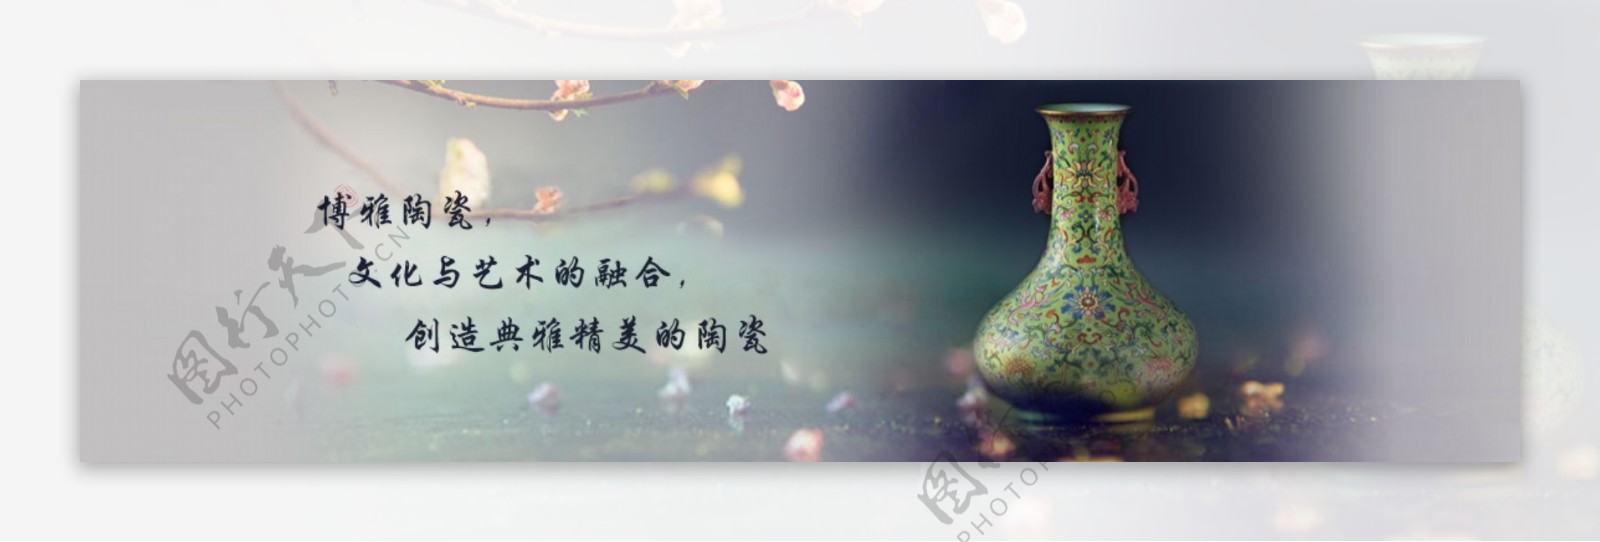 陶瓷banner图图片